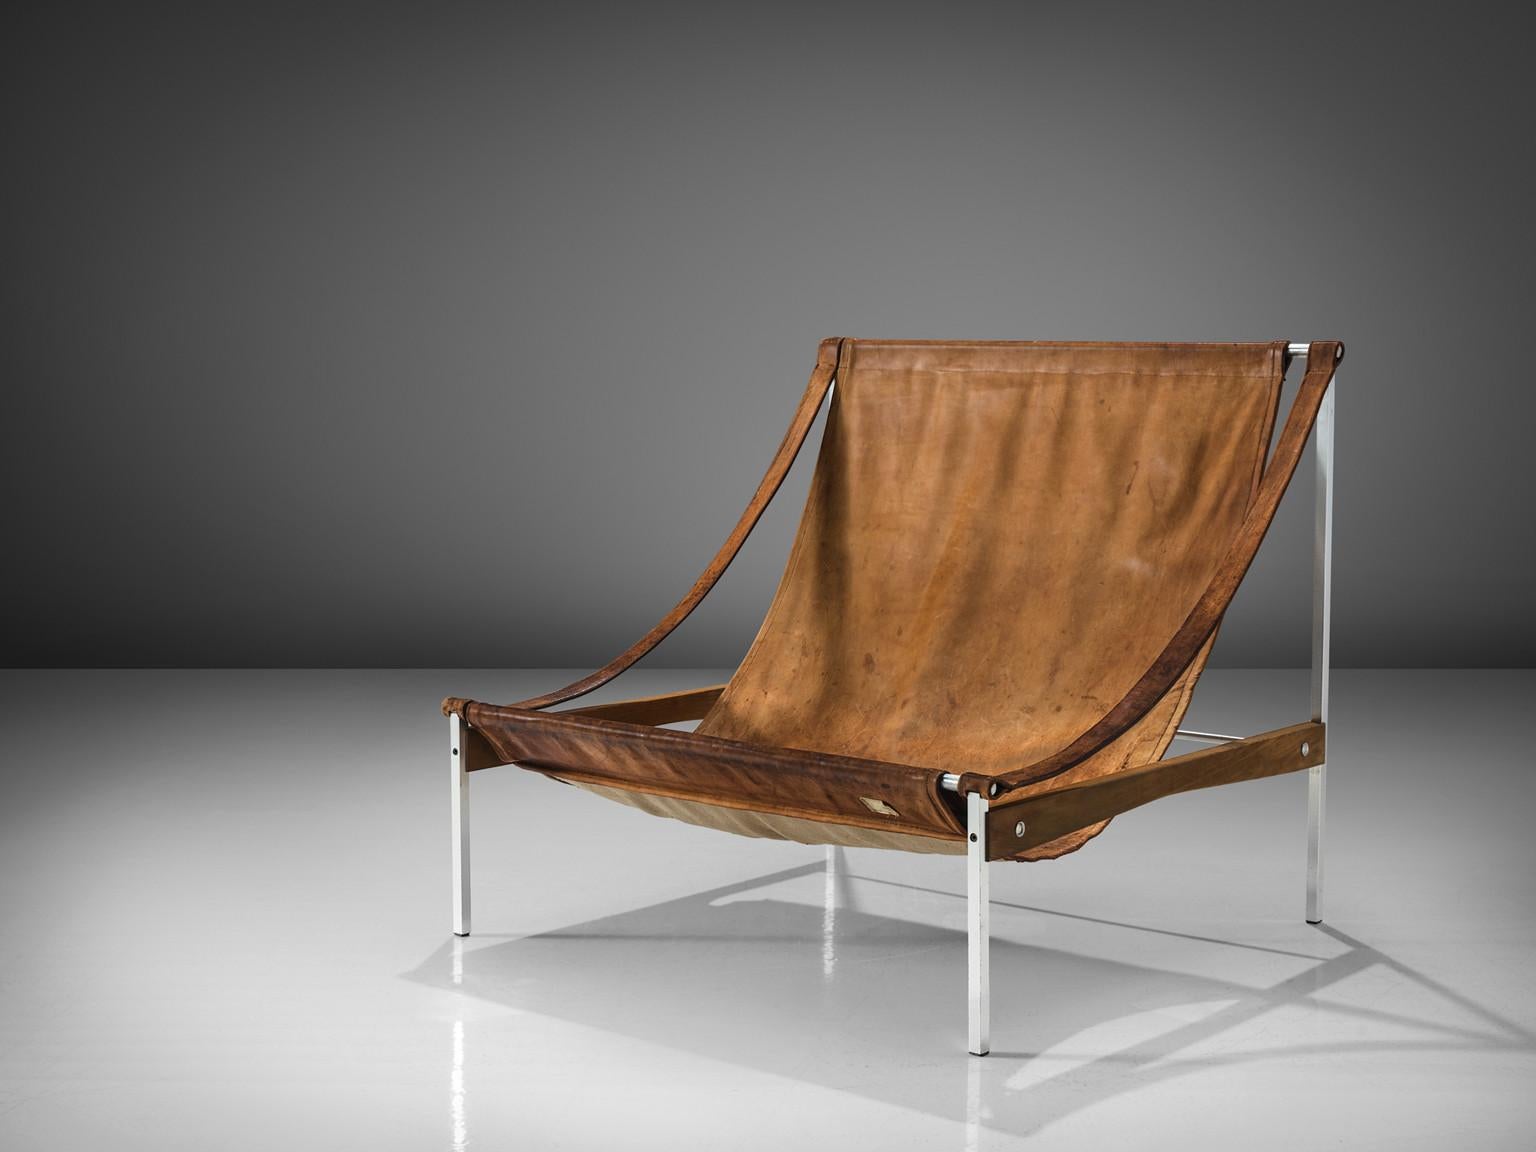 Stig Poulsson, Loungesessel, Modell 'Bequem', Leder, Aluminium, Esche, Dänemark, Entwurf 1968-1969

Der Loungesessel 'Bequem' wurde von Stig Poulsson entworfen. Das auffälligste Merkmal dieses außergewöhnlichen Stuhls ist seine schiere Größe. Die